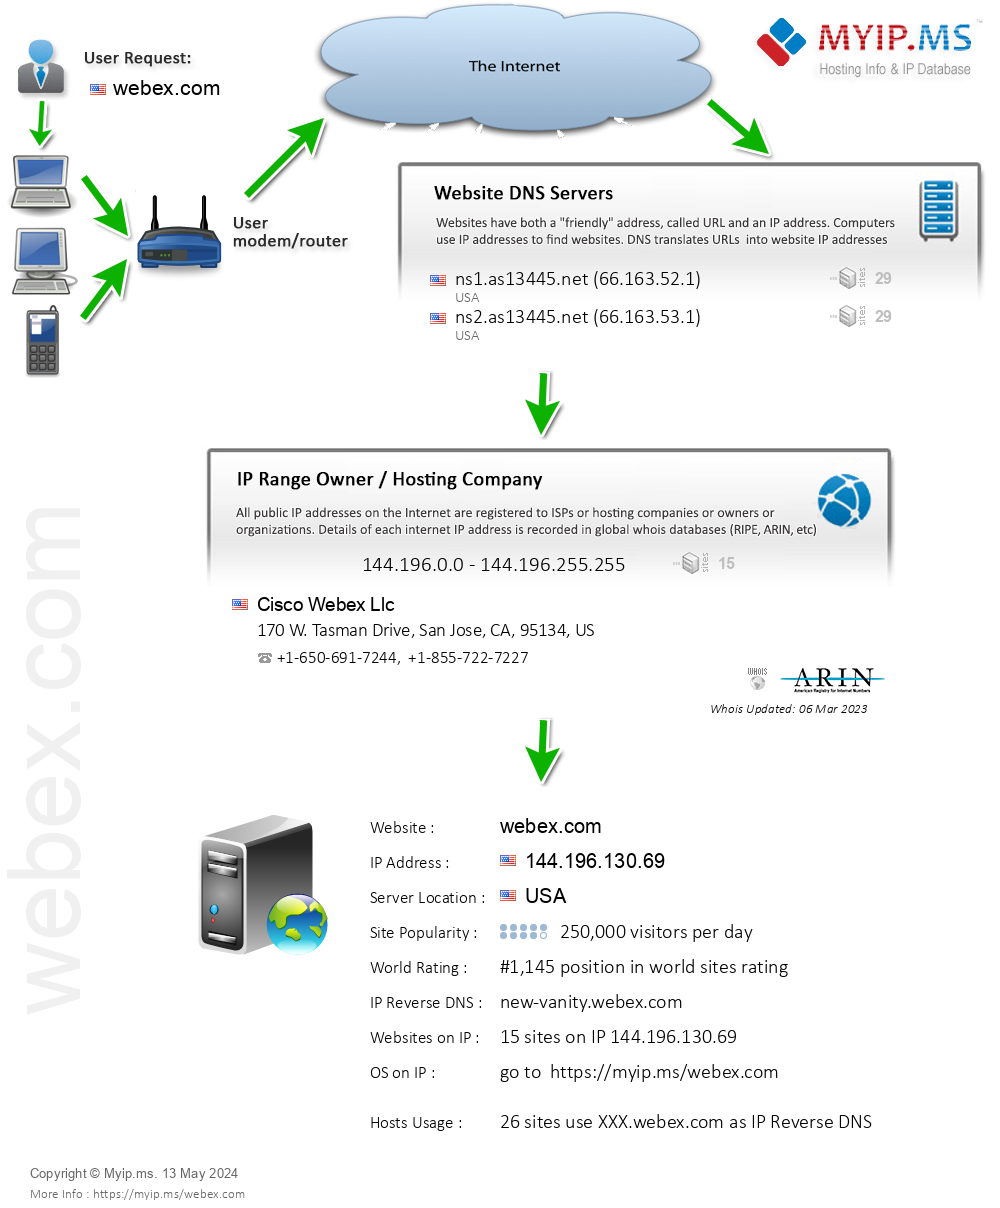 Webex.com - Website Hosting Visual IP Diagram